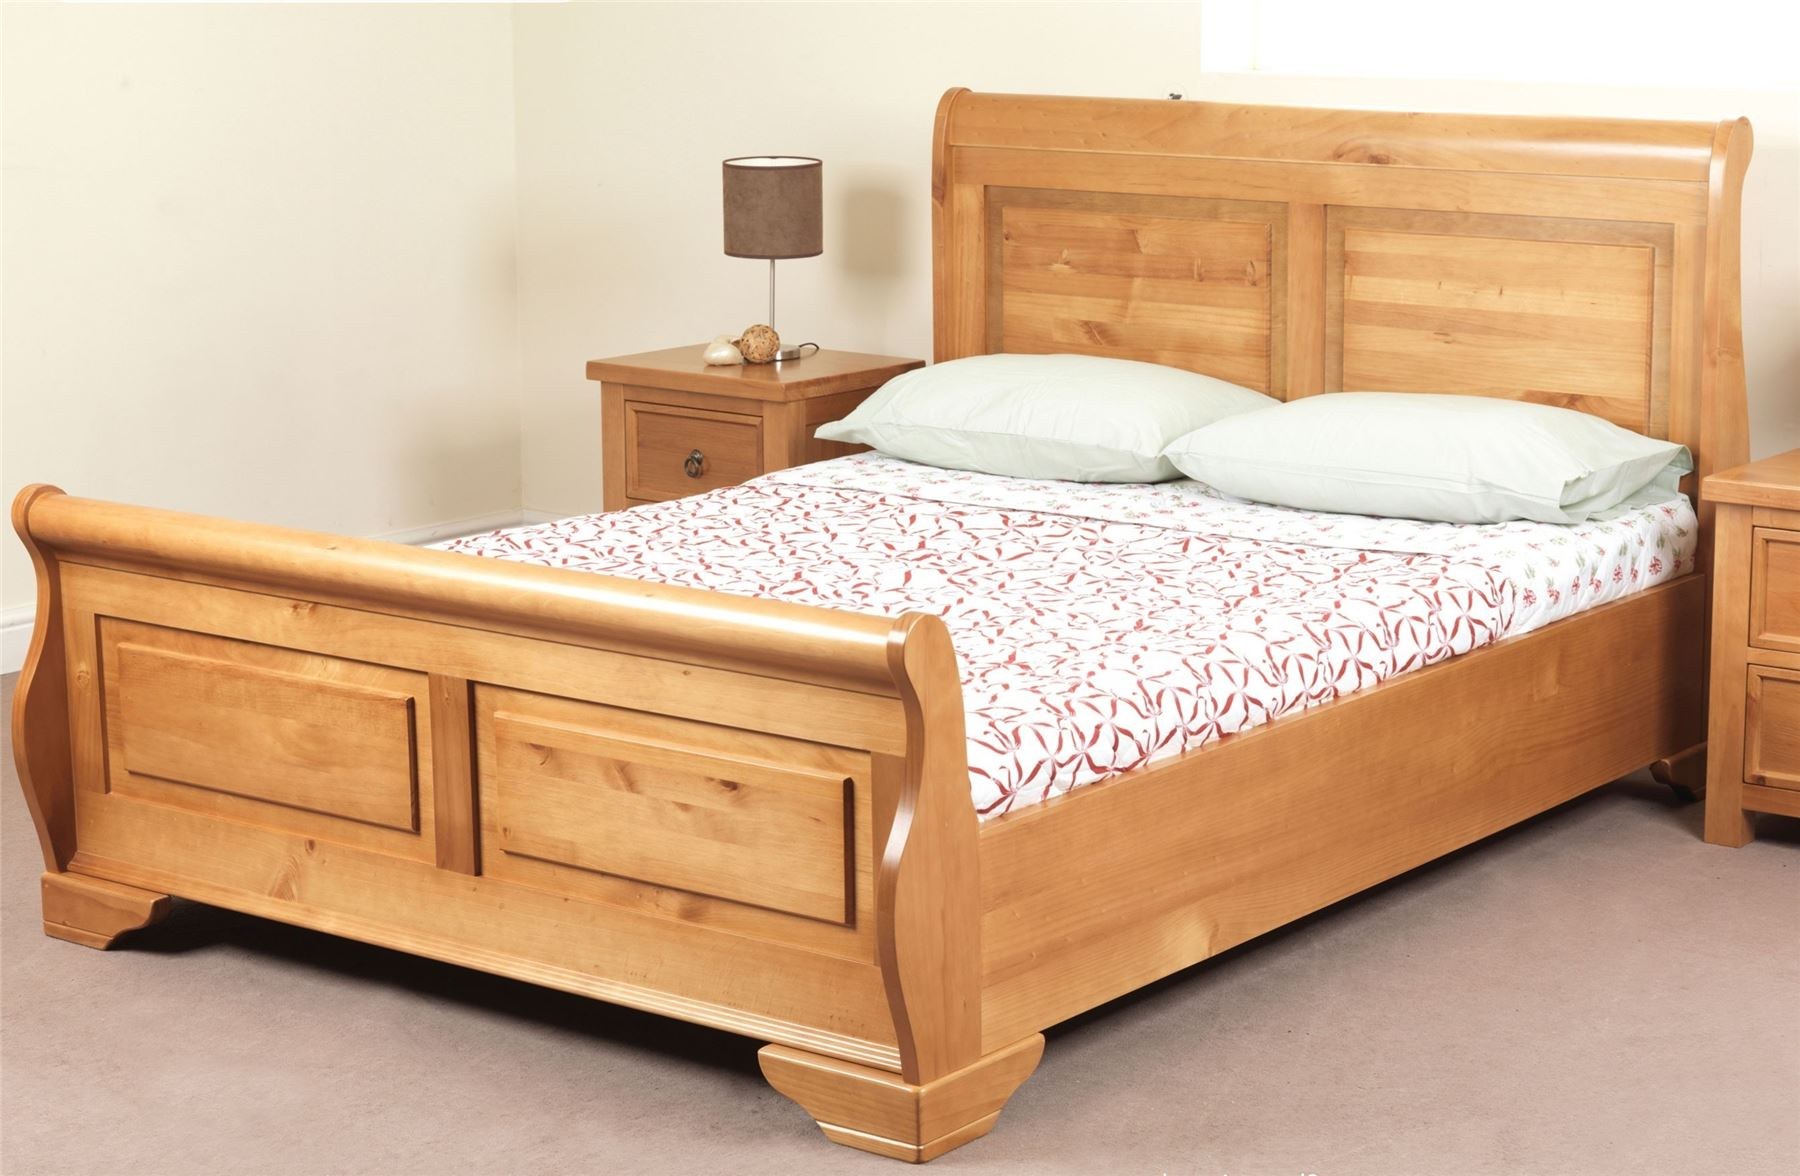 Купить деревянную кровать недорого. Кровать Кинг сайз. Кровать деревянная. Кровать из натурального дерева. Кровать из массива дерева.